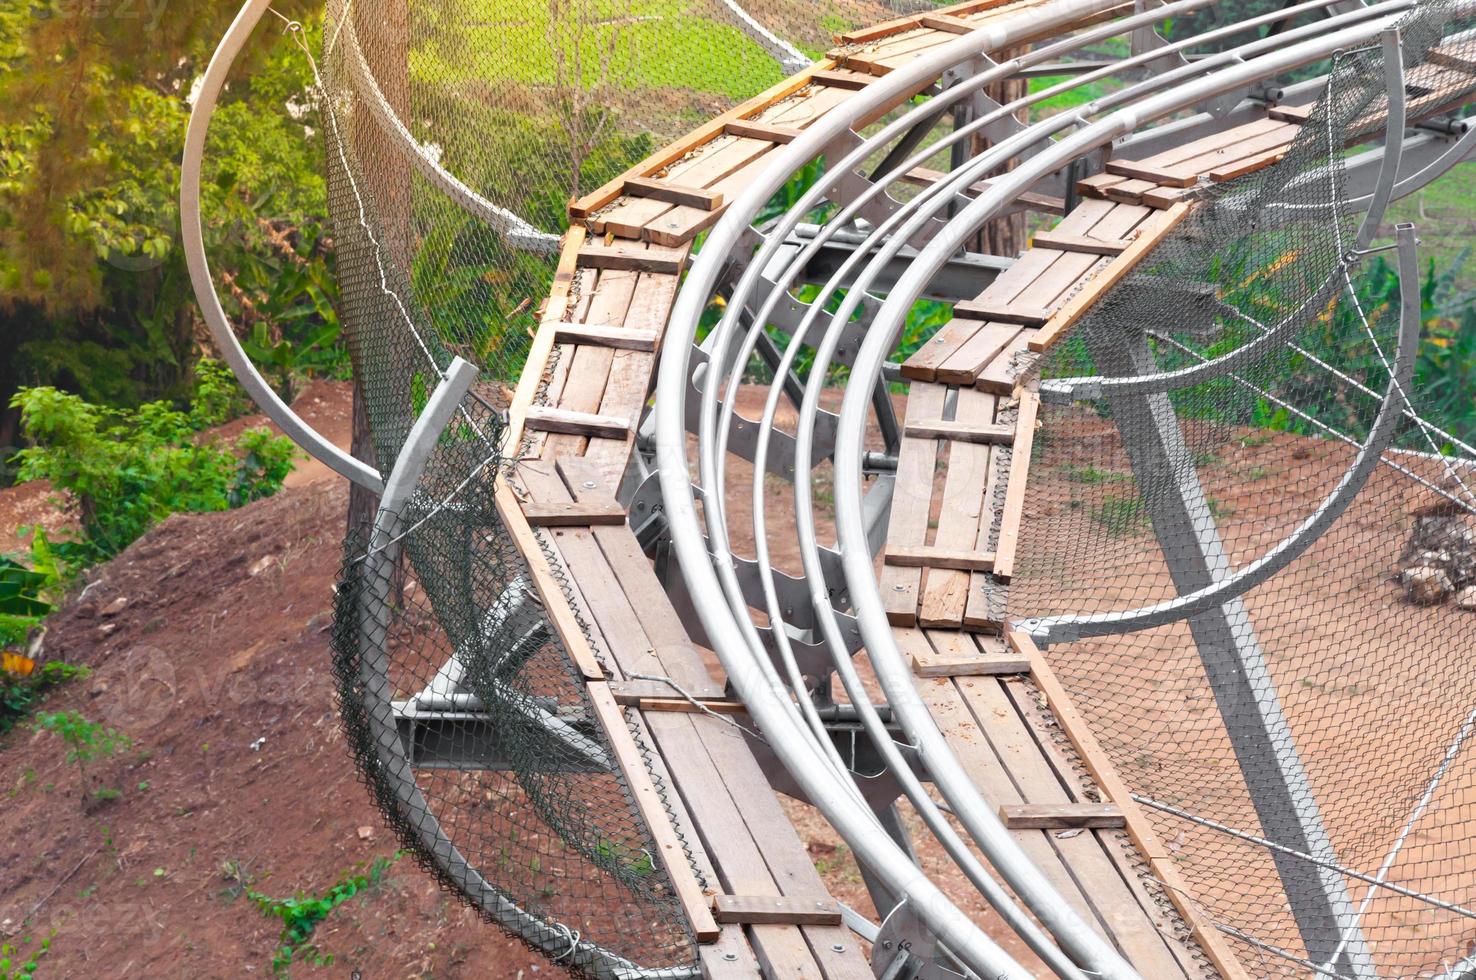 rail Rollercoaster adventurous, cross in side forest photo